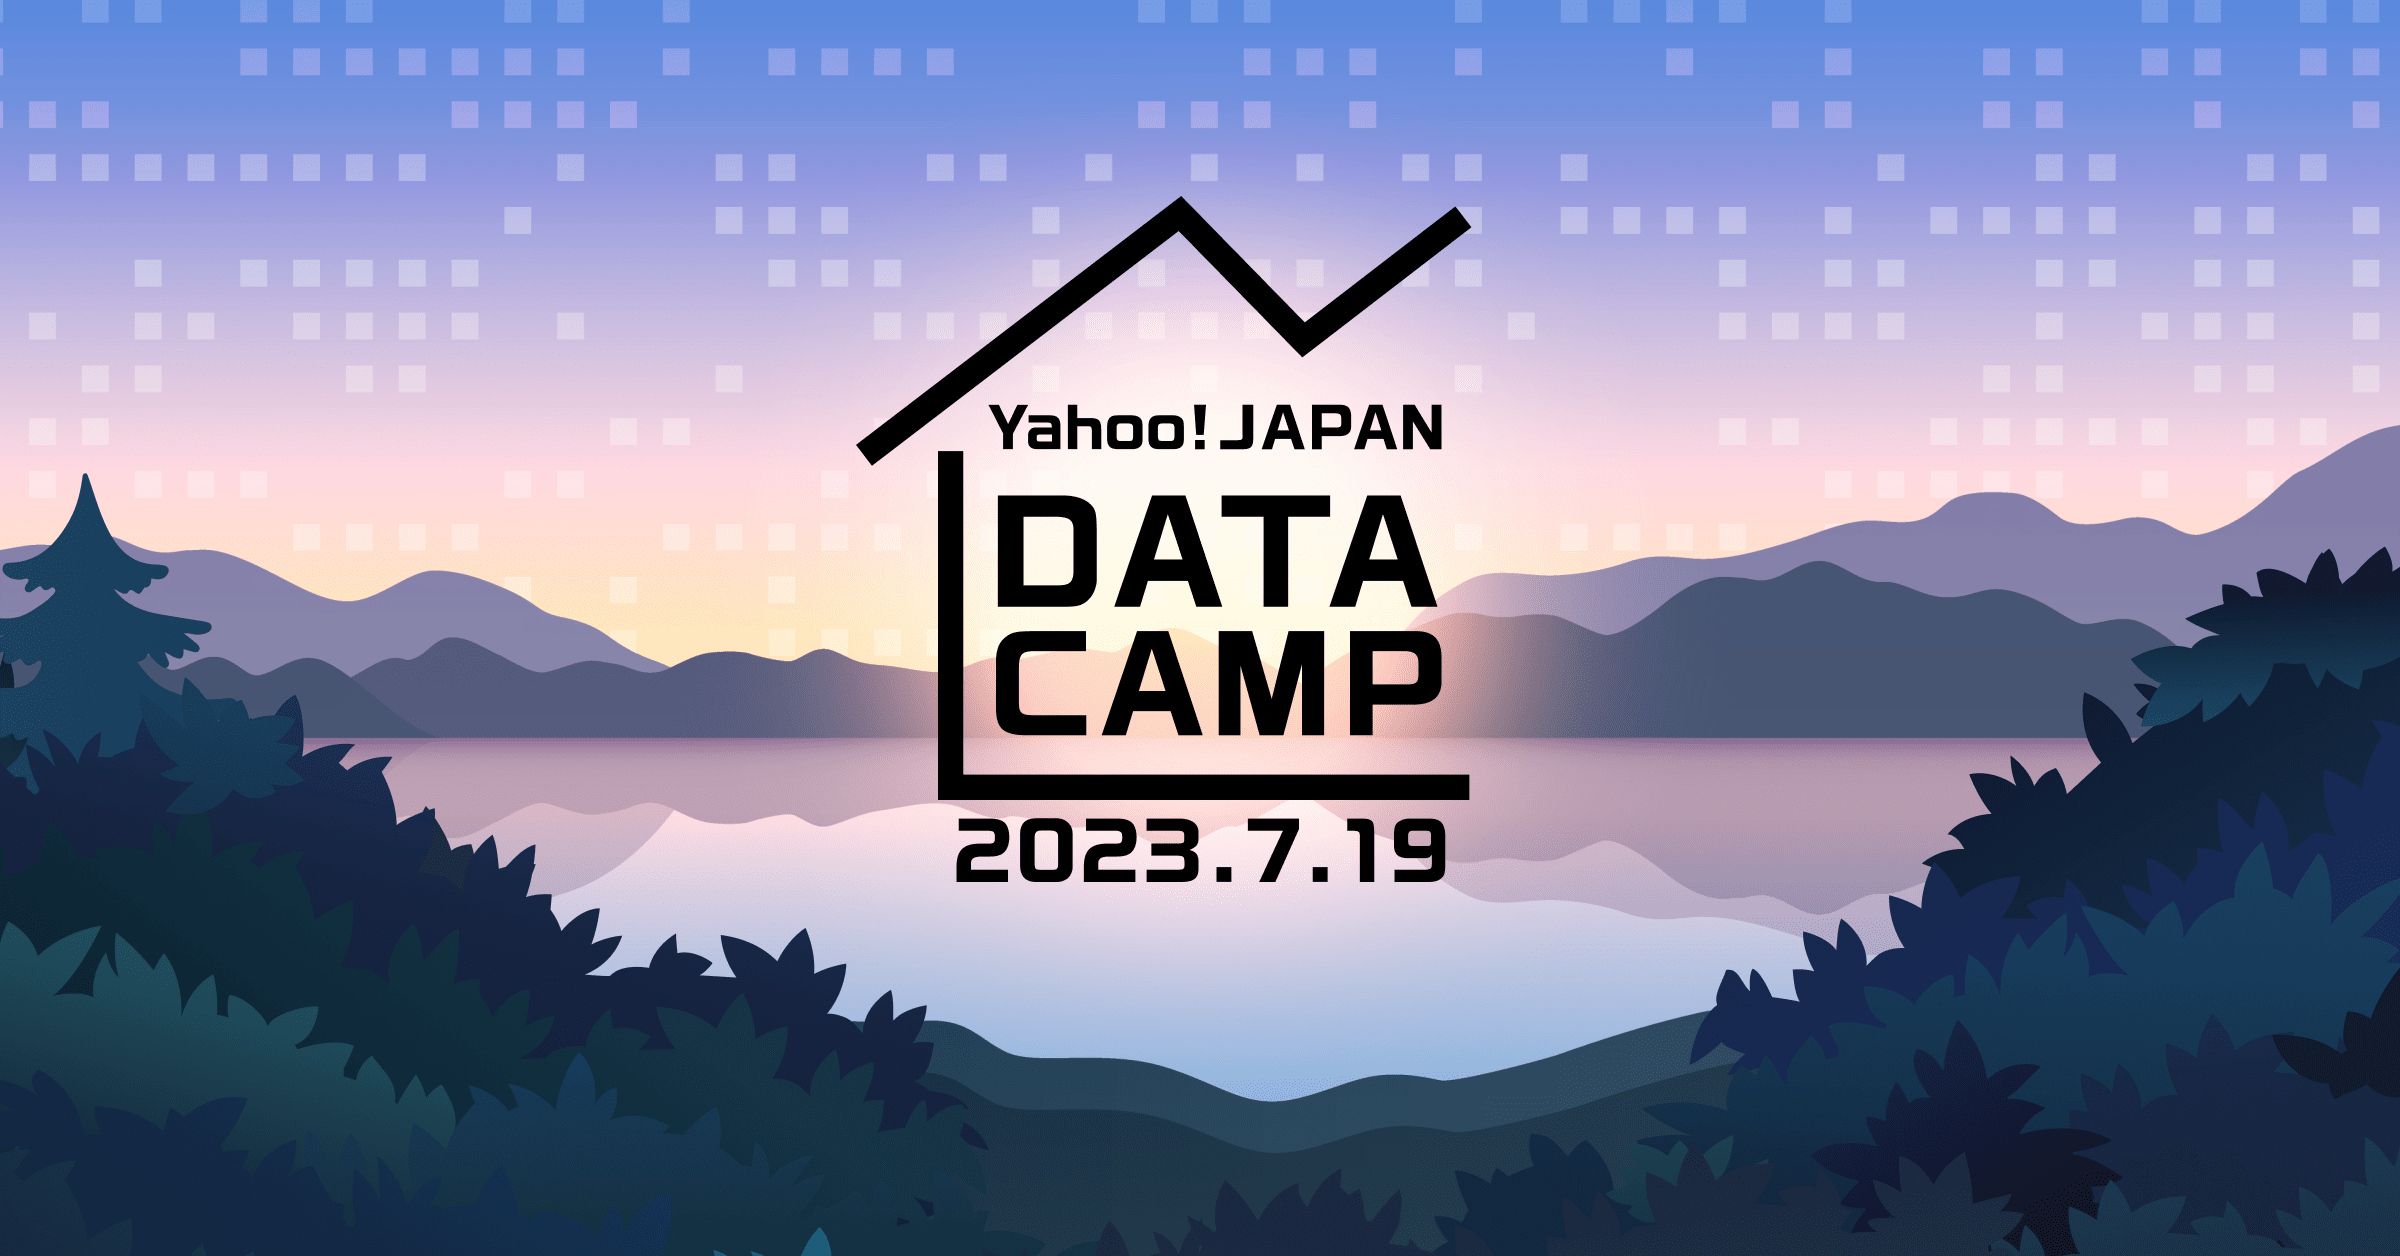 Yahoo! JAPAN DATA CAMP 2023